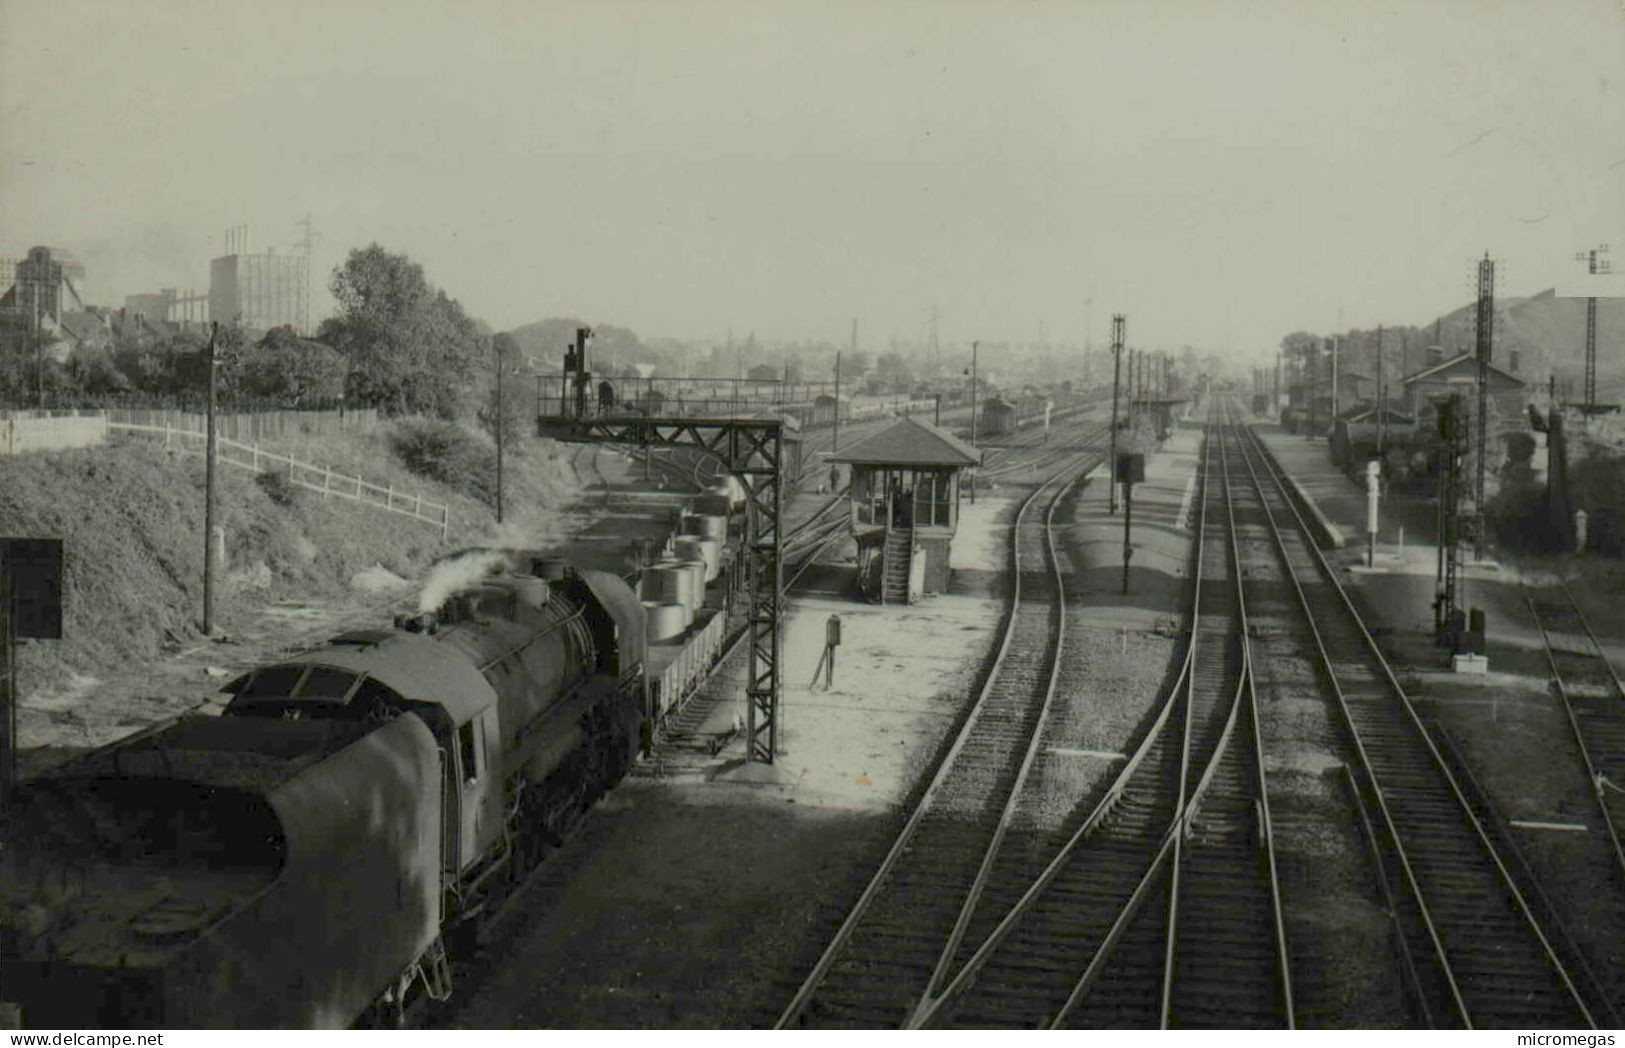 Gare à Identifier - Cliché Jacques H. Renaud - Eisenbahnen